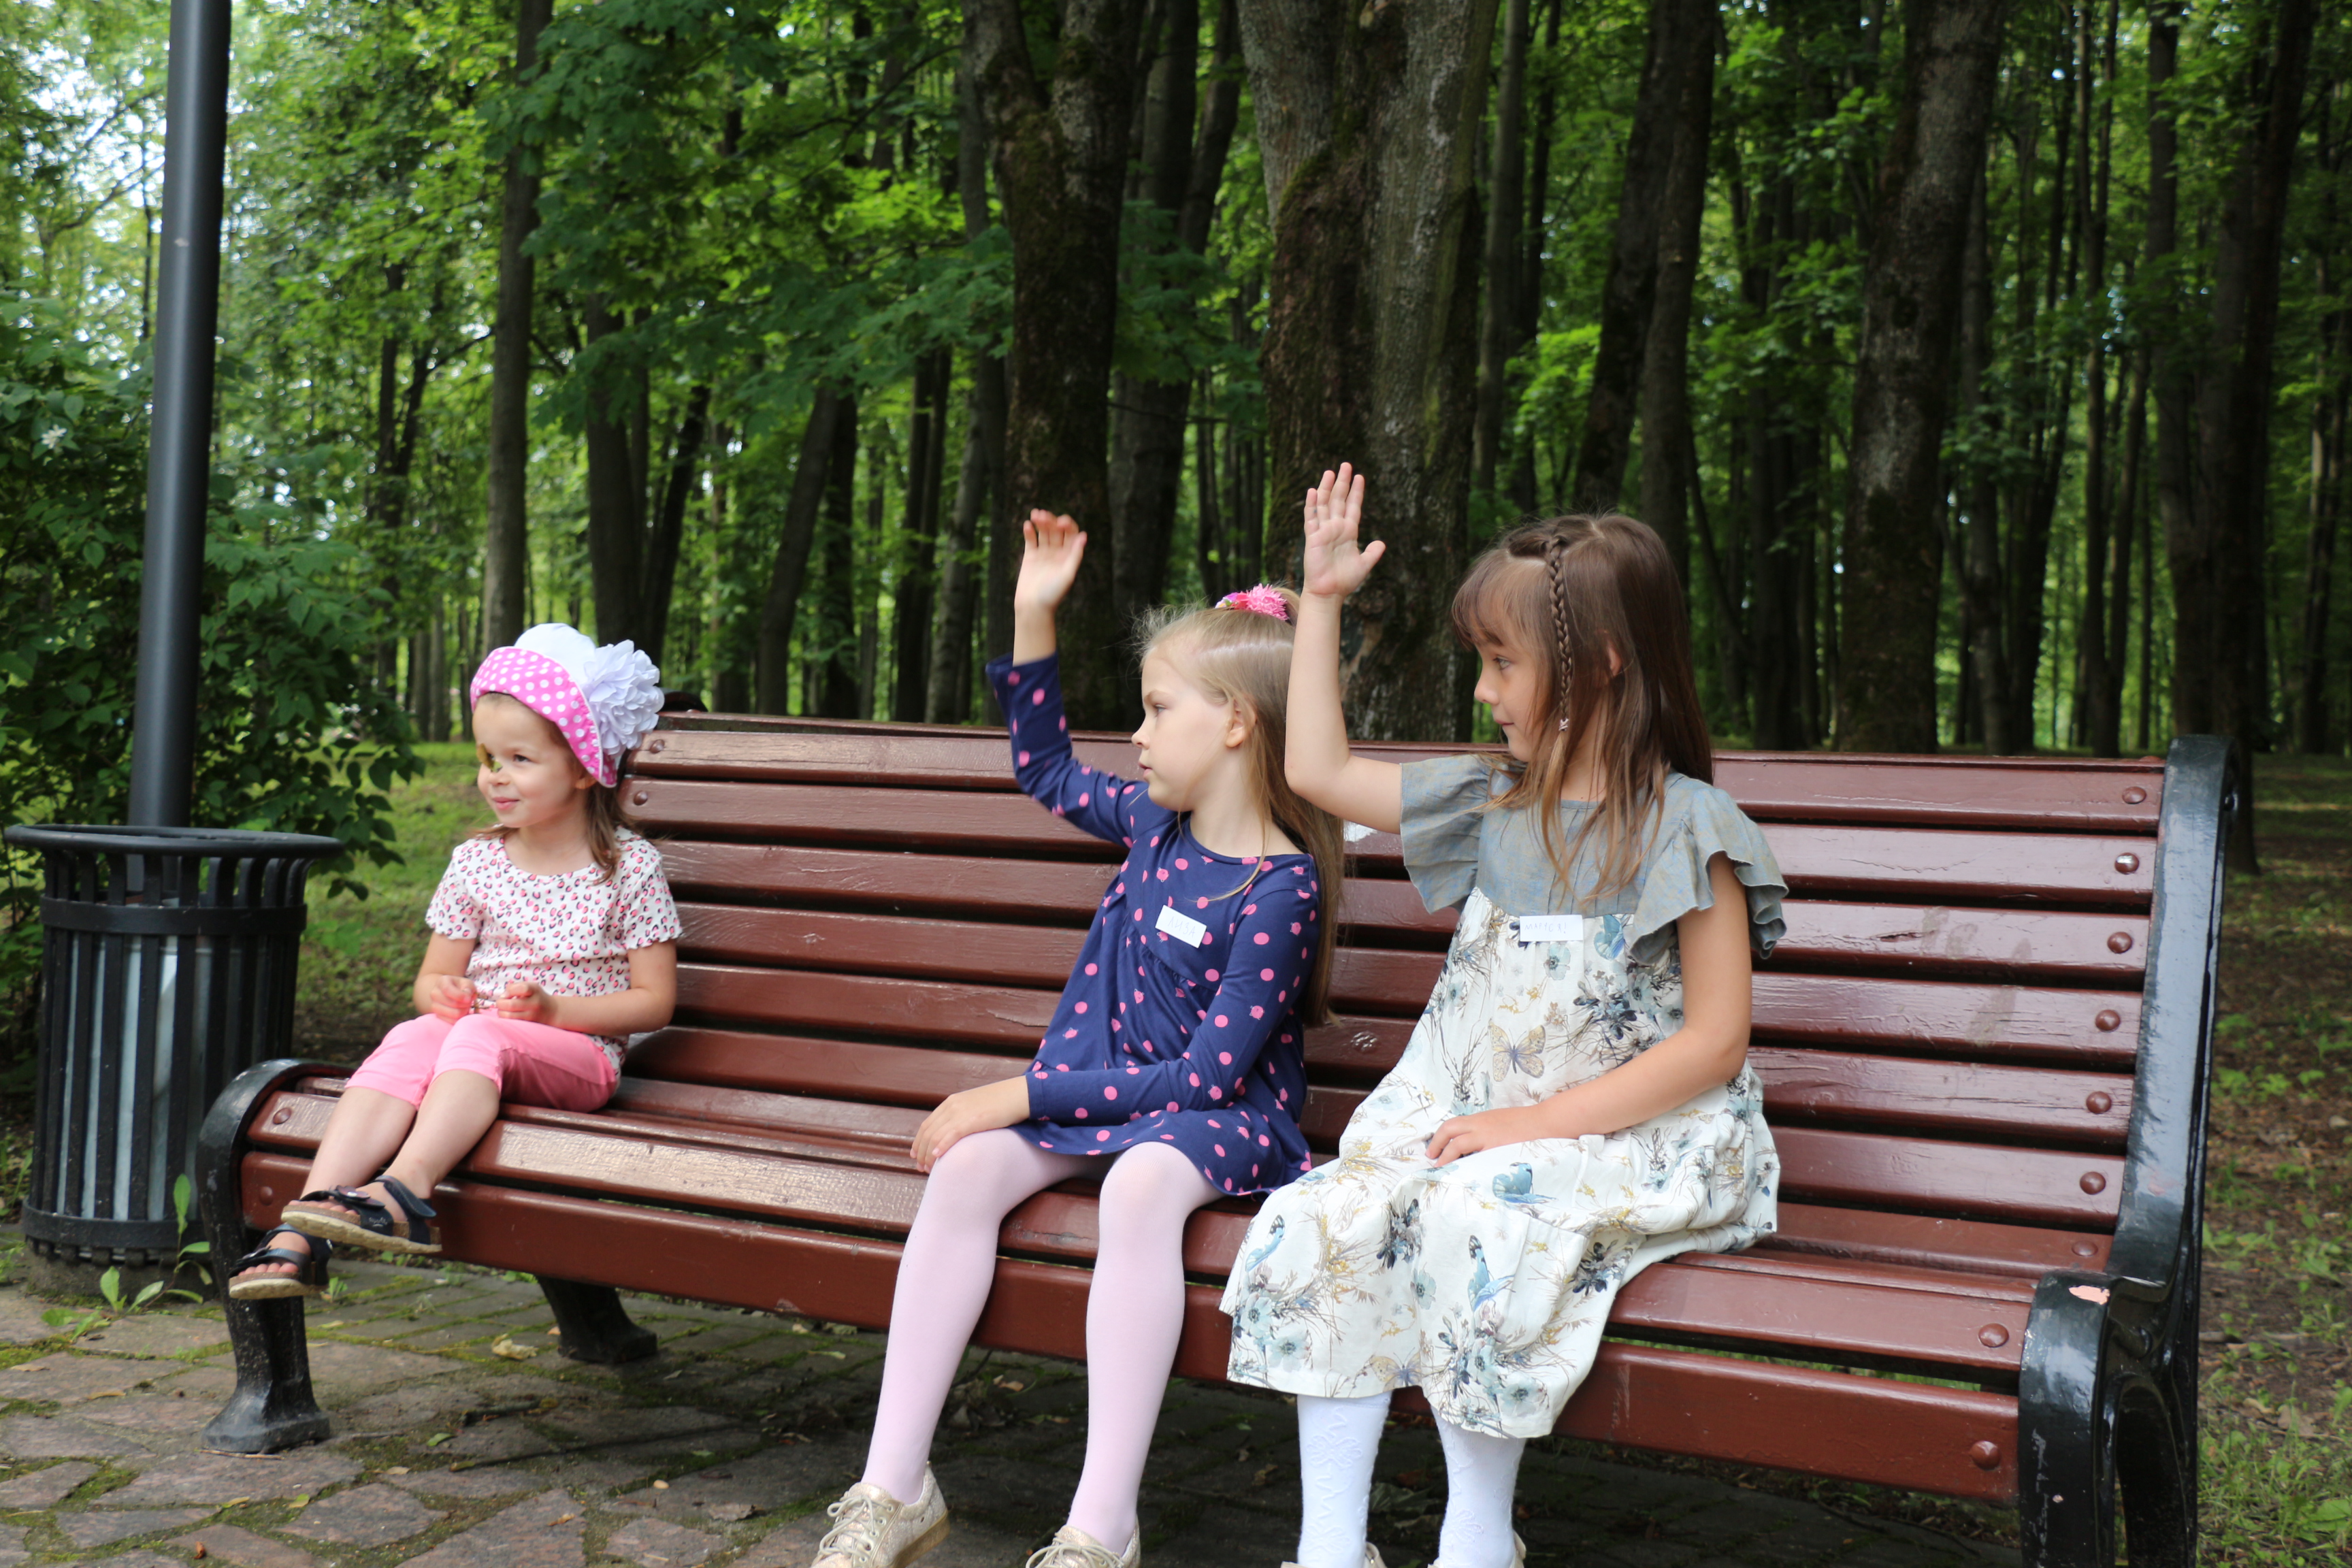 “Тренируемся звать на помощь”: в Минске работает школа детской безопасности